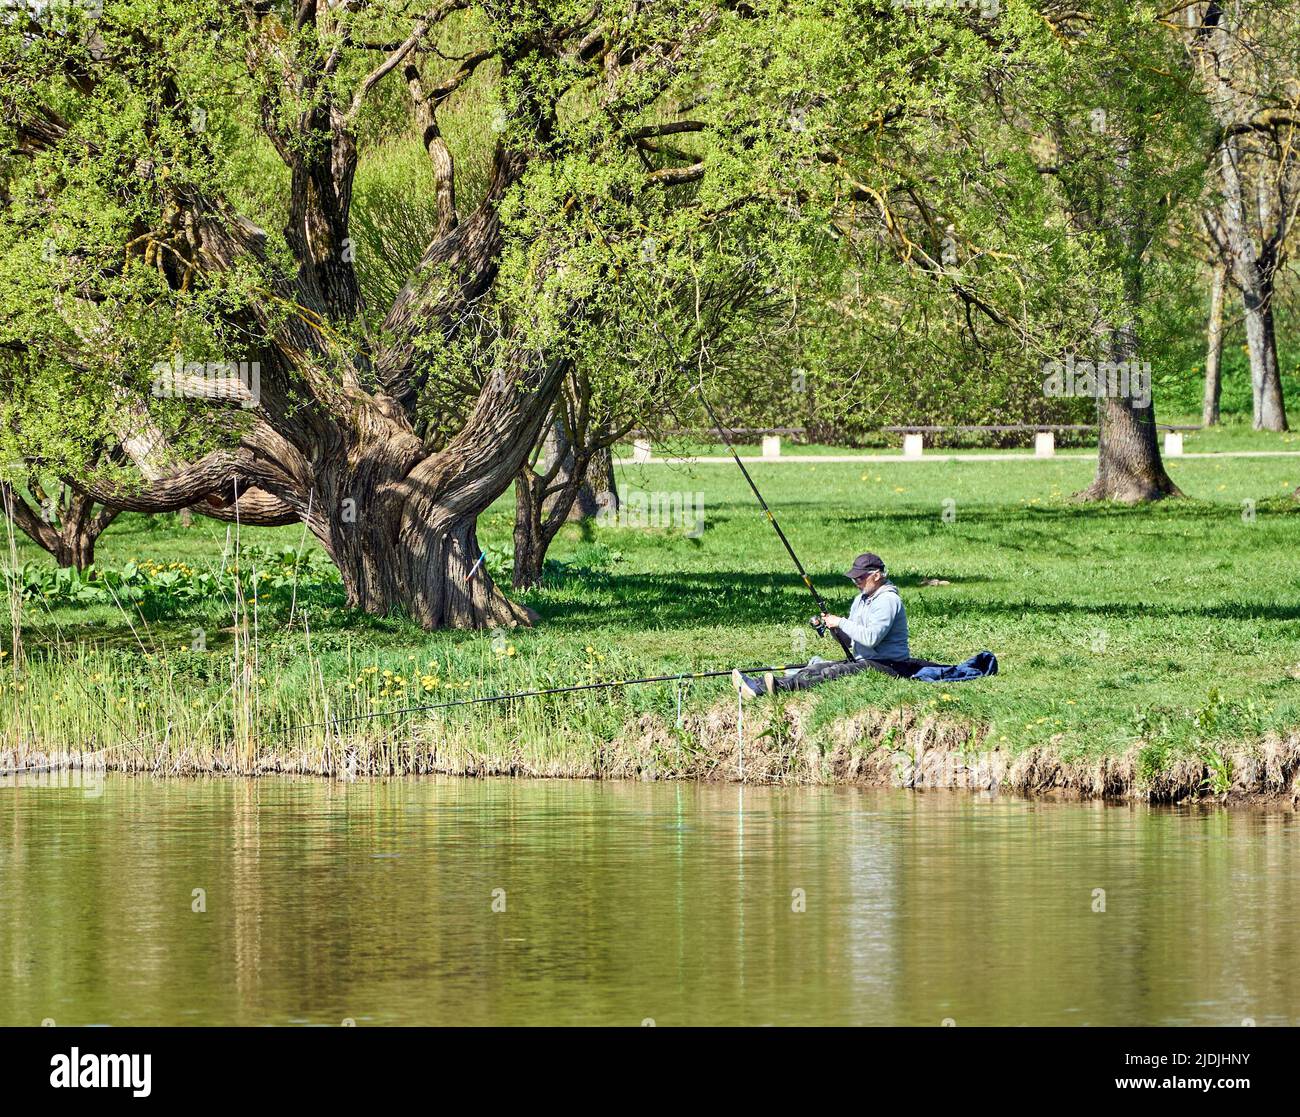 Riga, Lettonie - 8 mai 2022: Un pêcheur est assis avec une canne à pêche sur la rive d'un lac dans un parc public. Herbe verte autour. Grand arbre à gauche. Banque D'Images